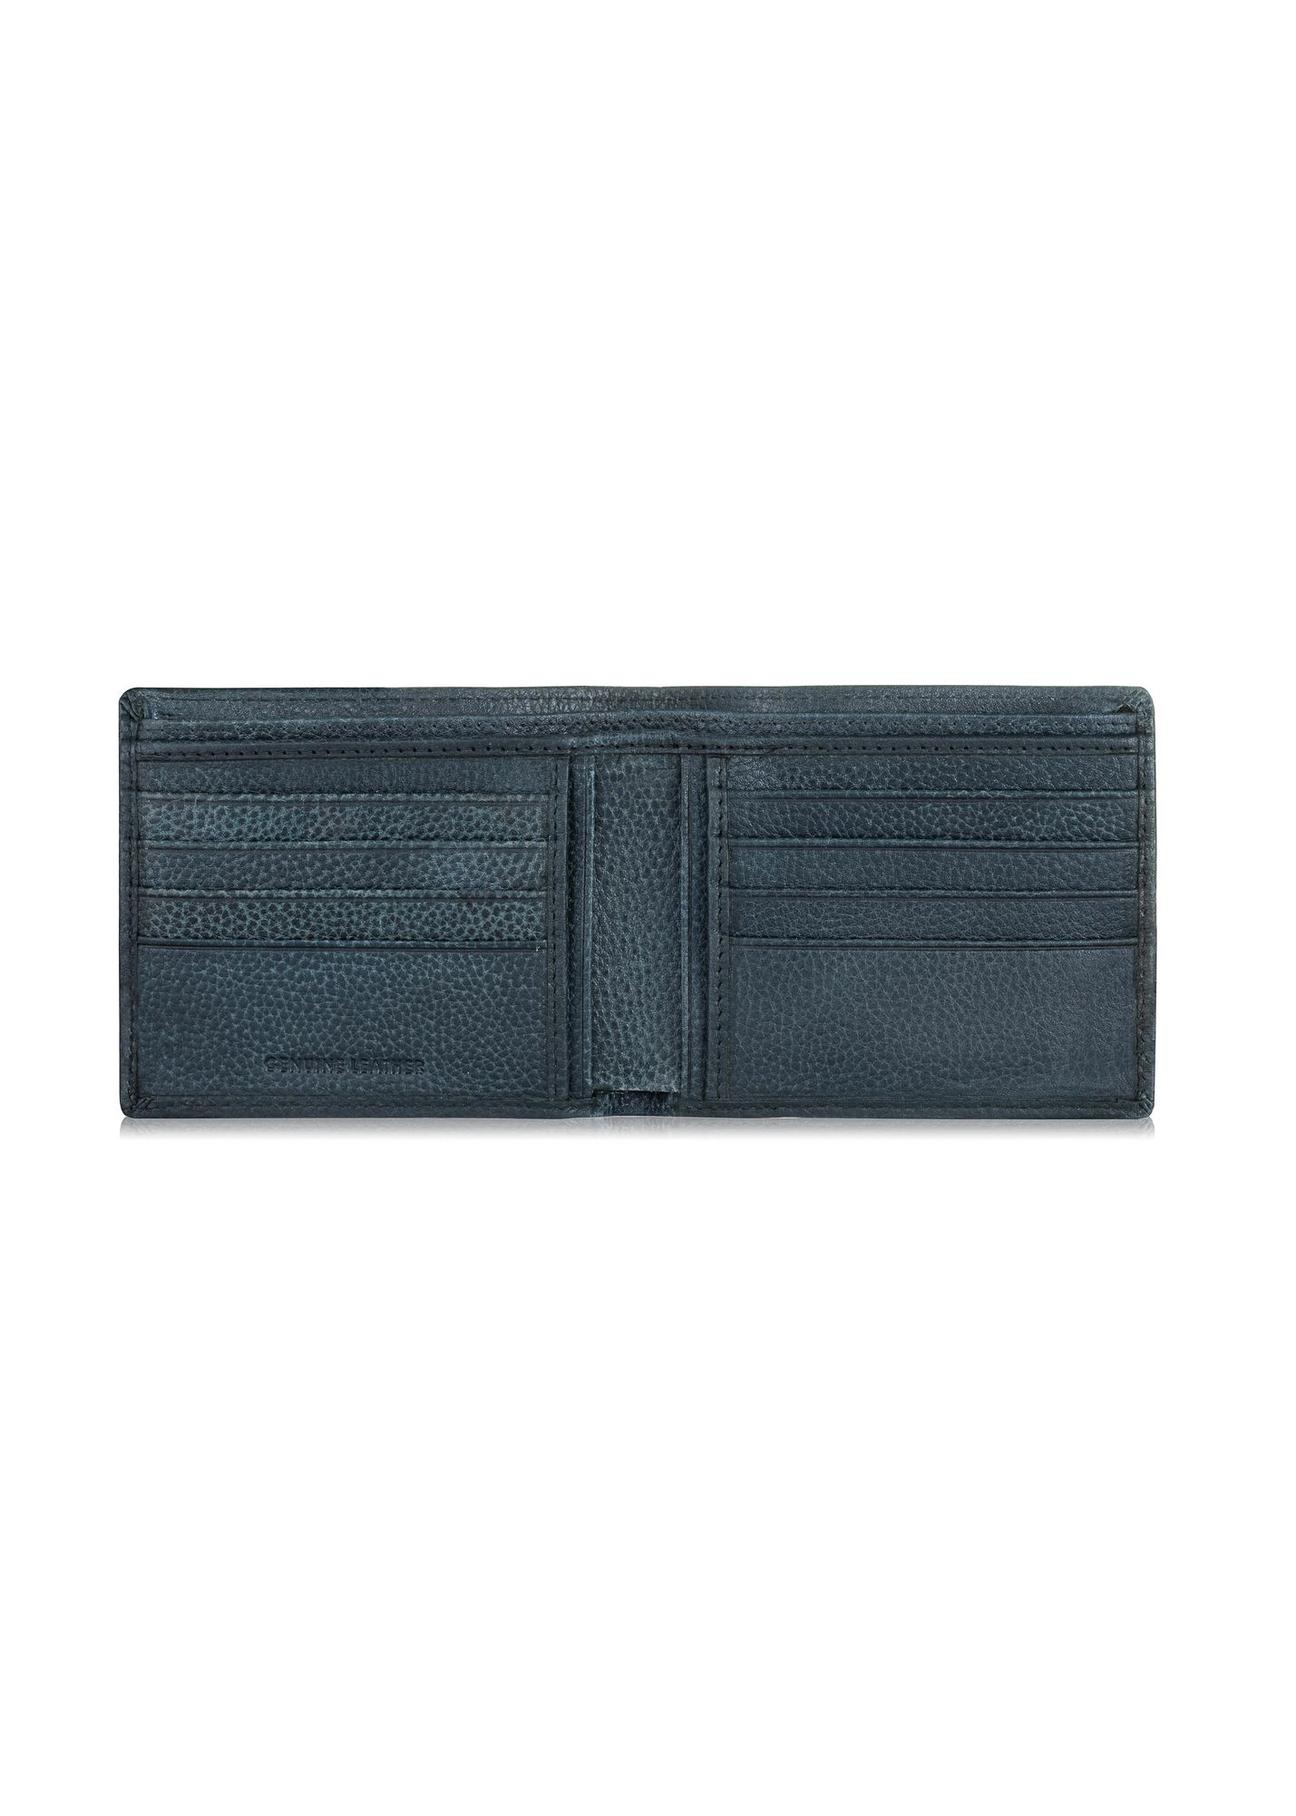 Granatowy skórzany portfel męski PORMS-0520-69(W23)